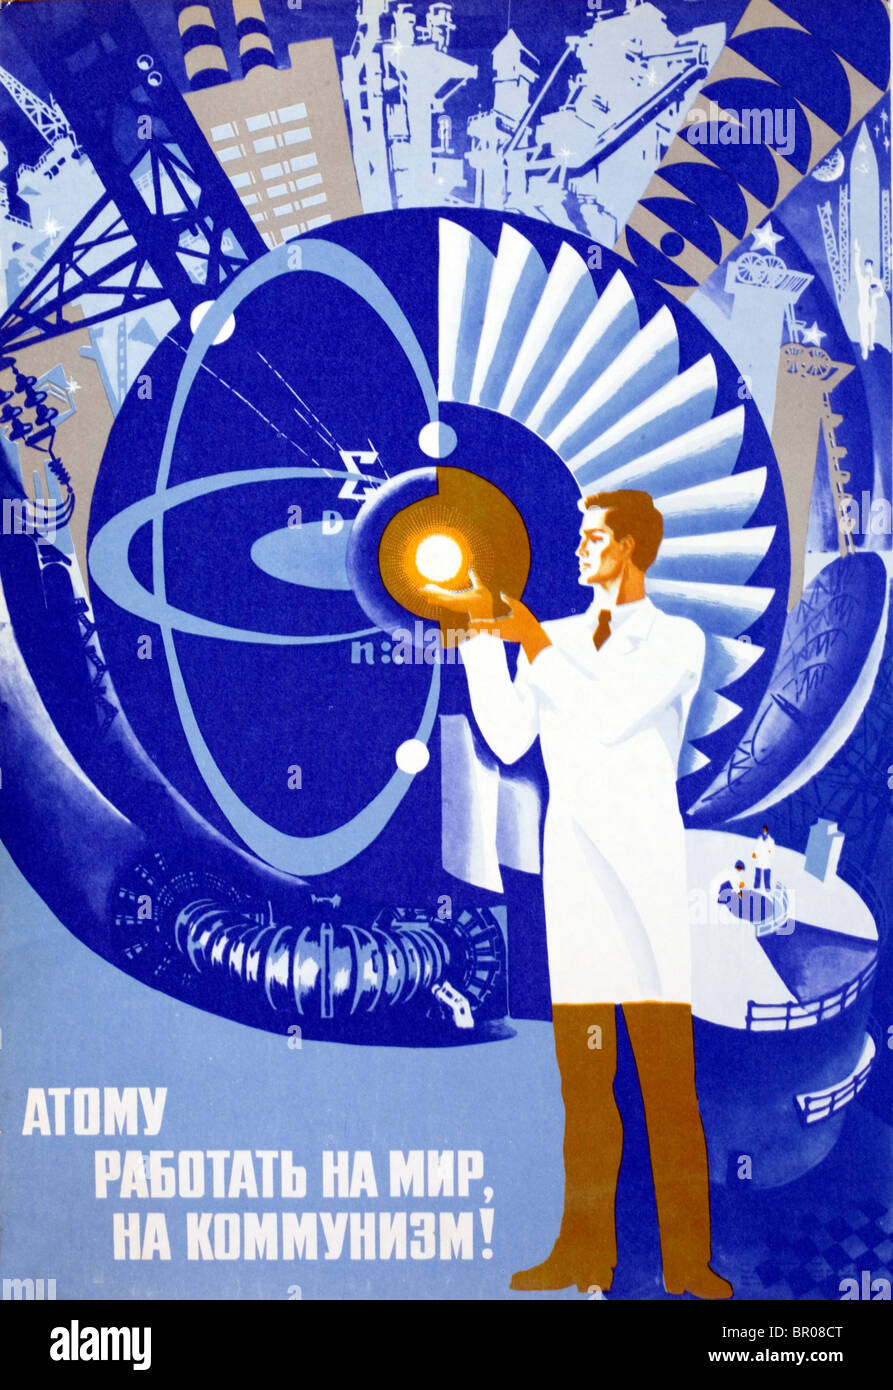 Poster per celebrare l'uso pacifico dell'atomo in Unione Sovietica. Foto Stock